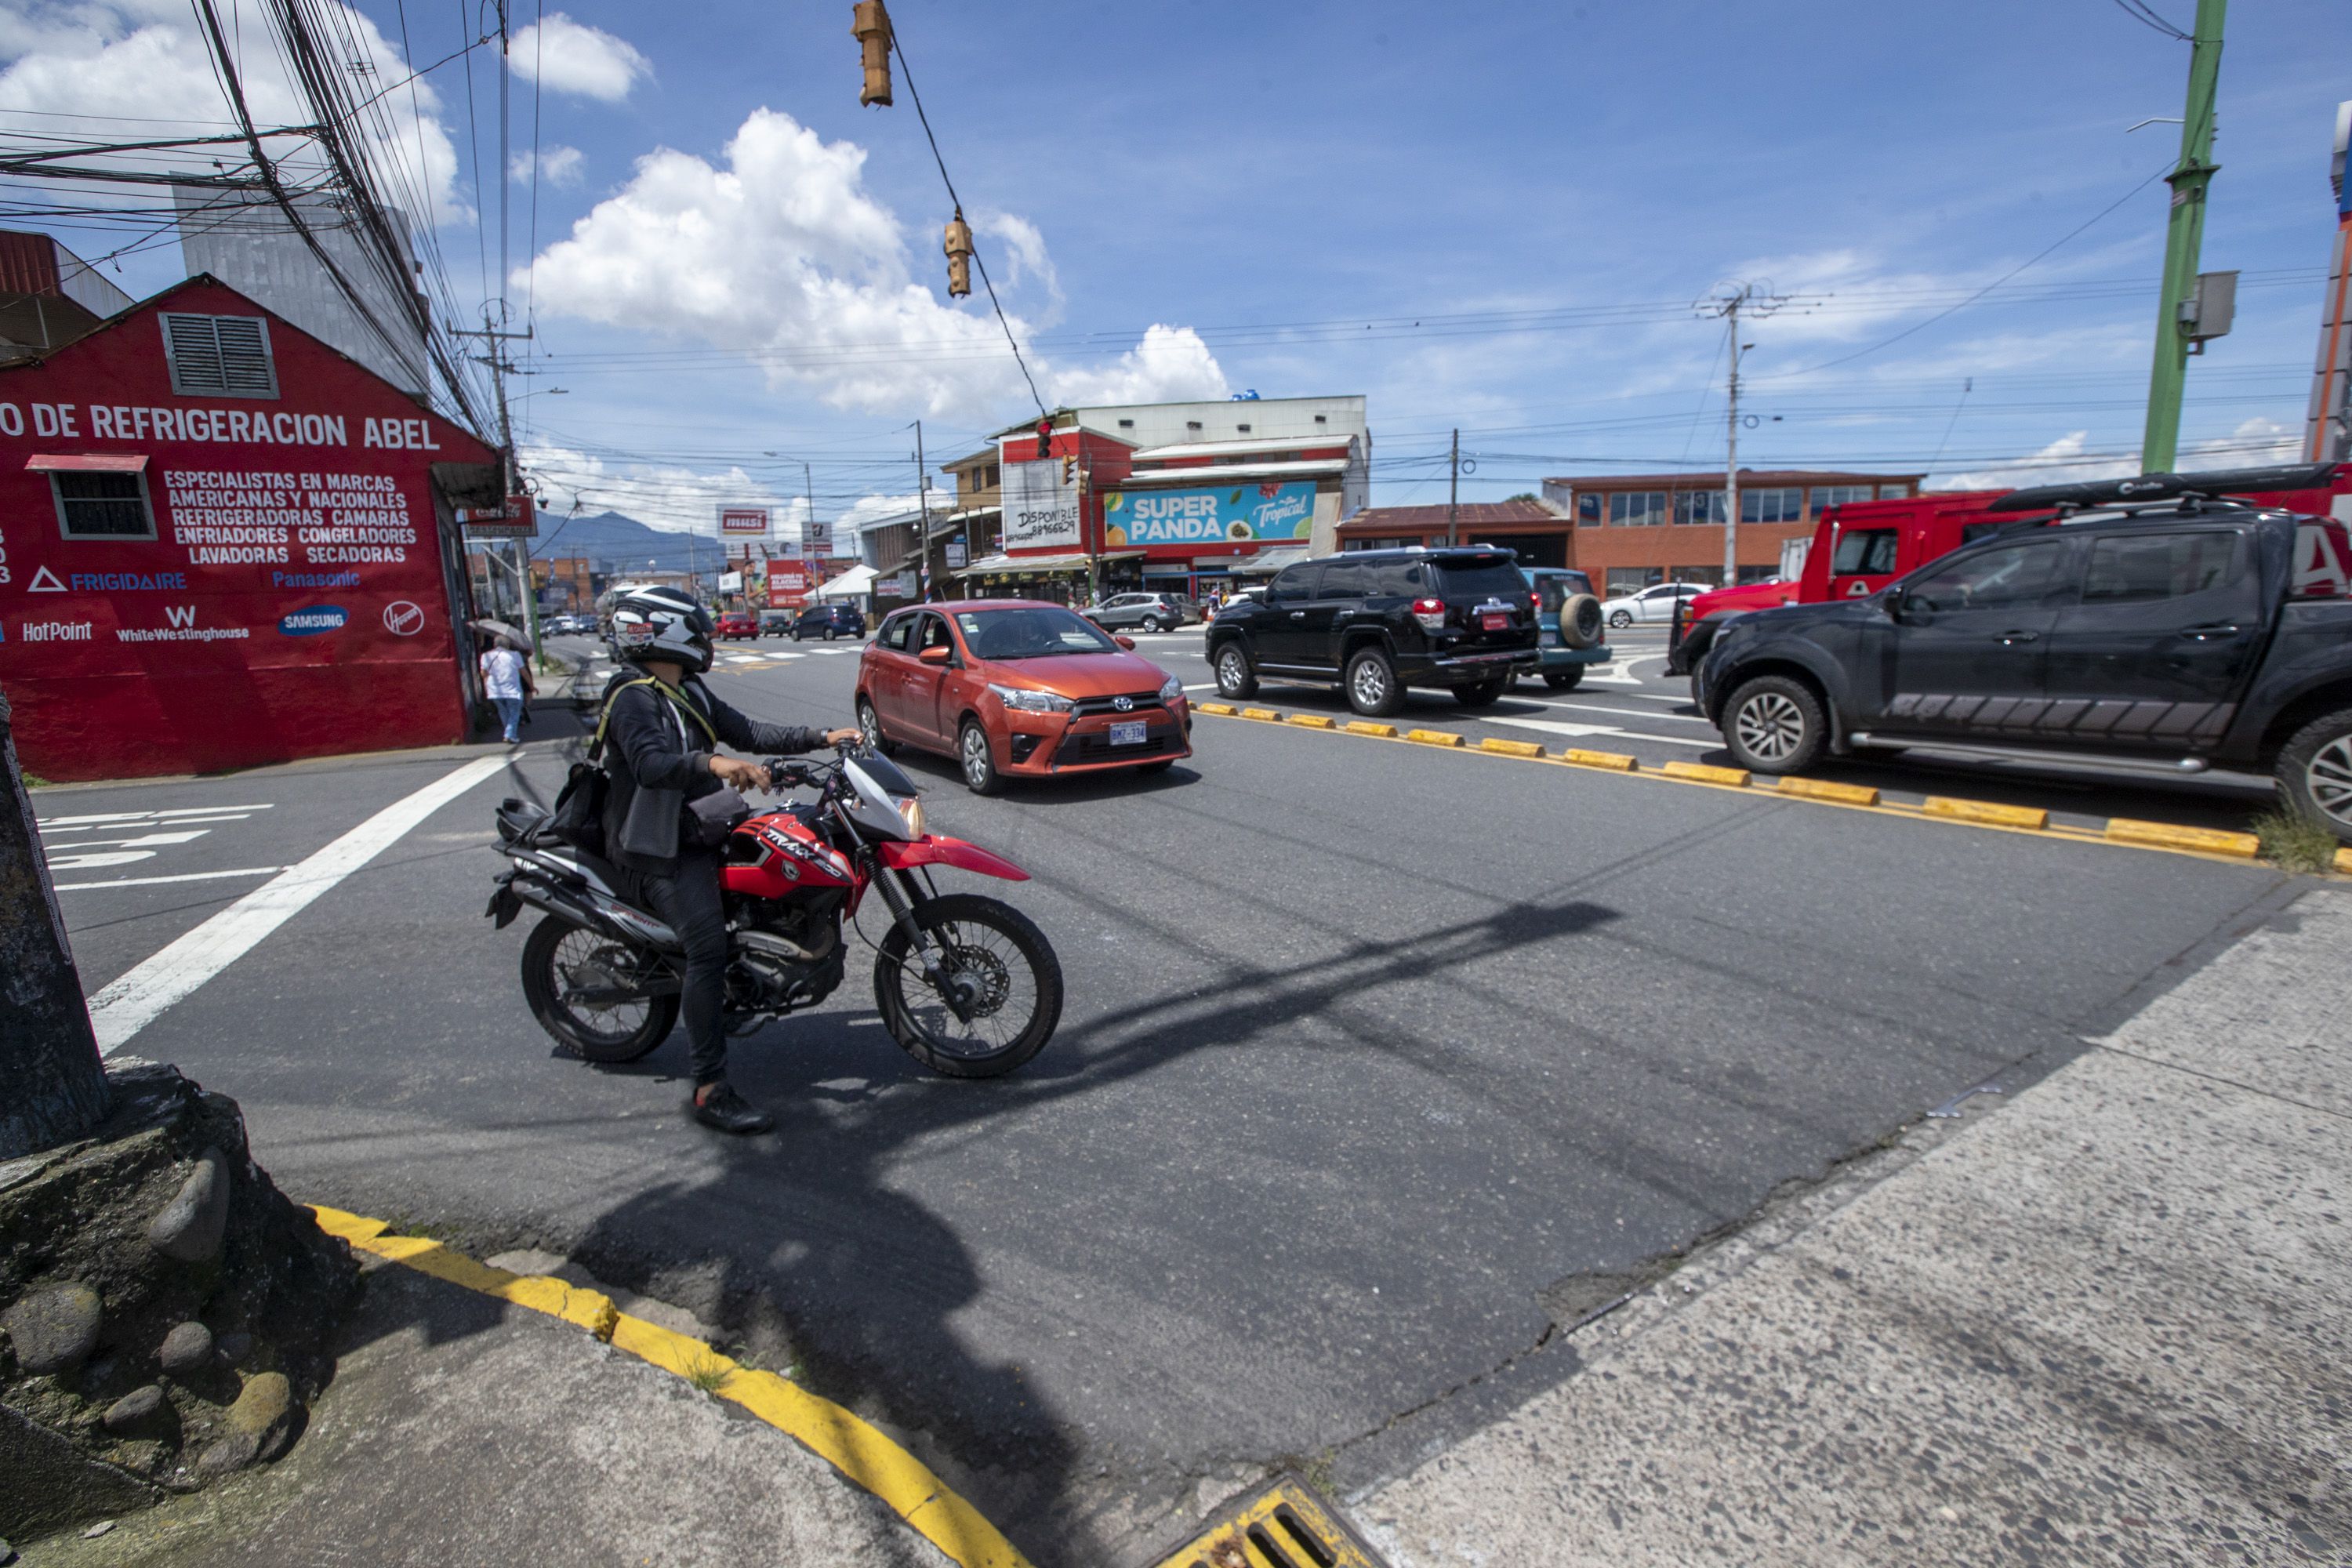 La ruta 218 en Goicoechea, Guadalupe, acumula 57 colisiones con muertos o heridos graves, la concentración de urbes es uno de los factores que más incide en los accidentes. 